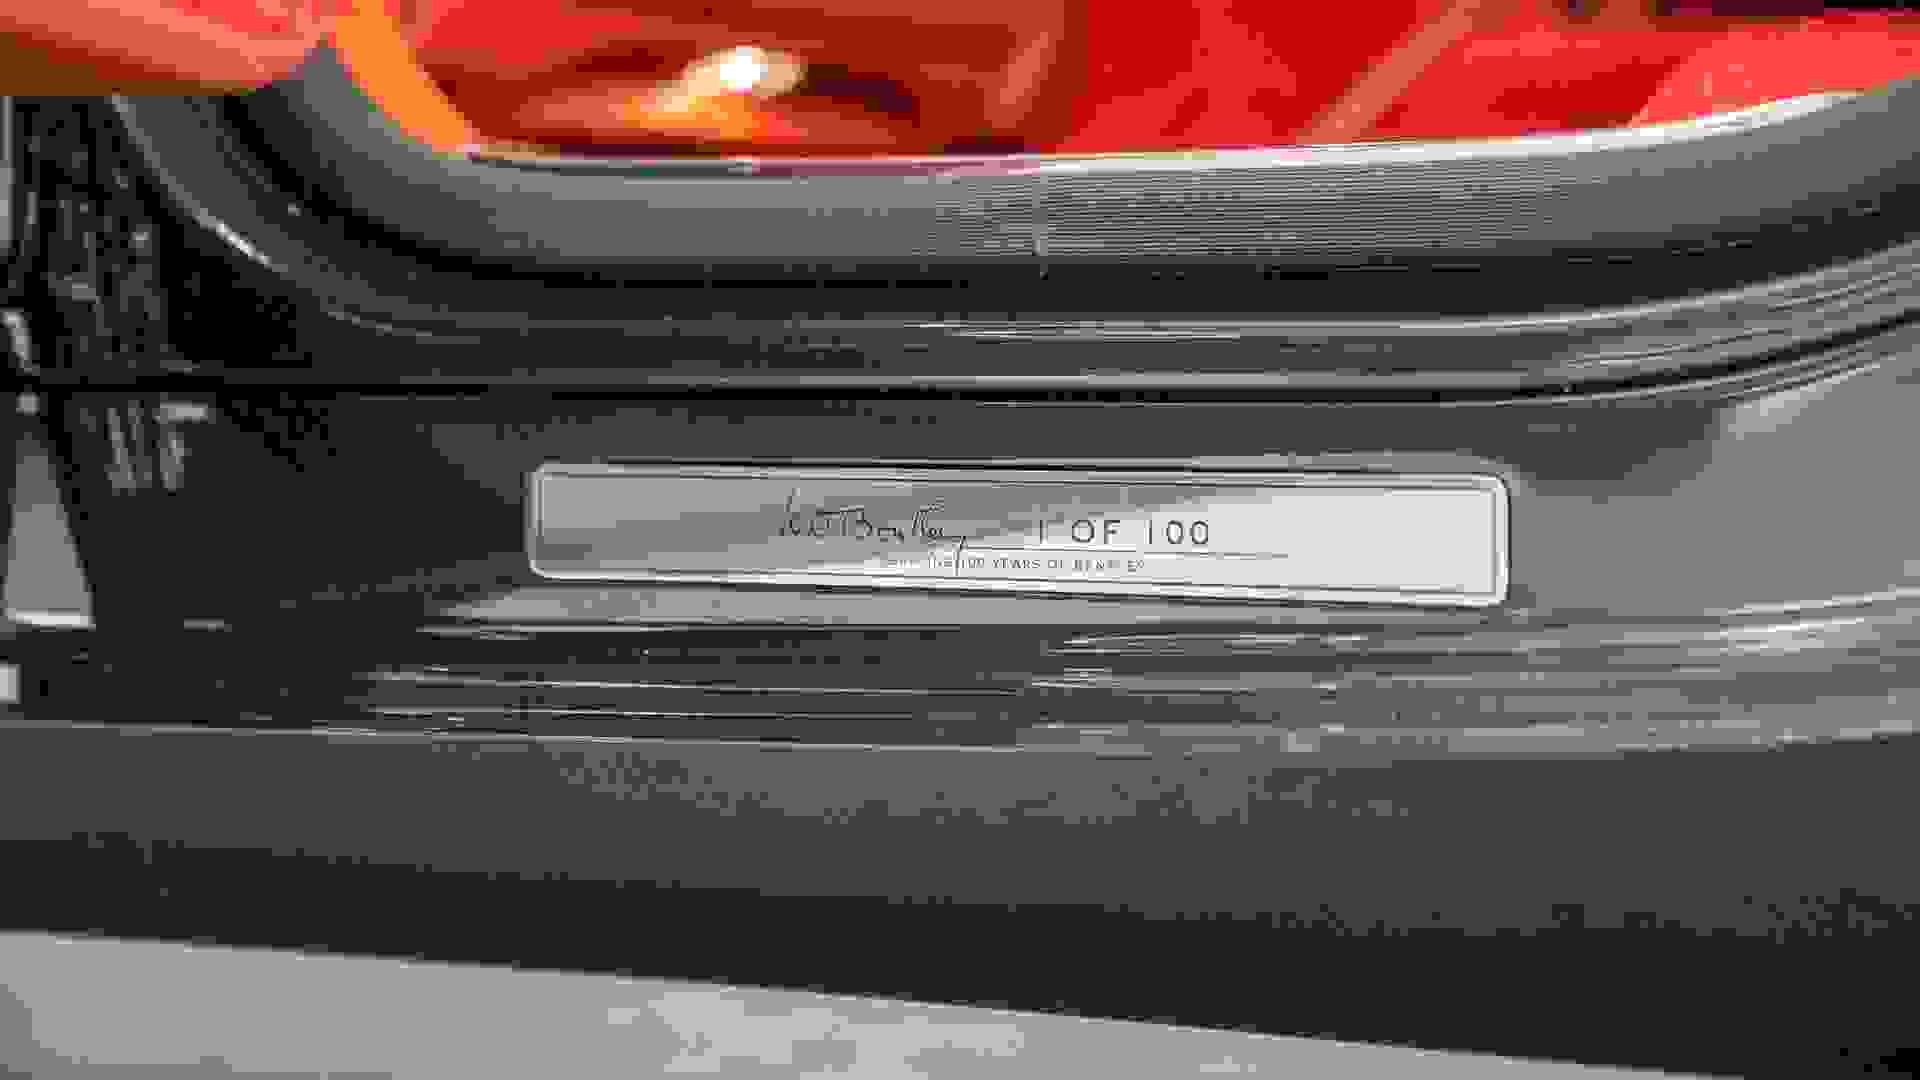 Bentley Mulsanne W.O Edition Speed Photo 65891276-3351-4416-8b9c-d0bc92b560fc.jpg